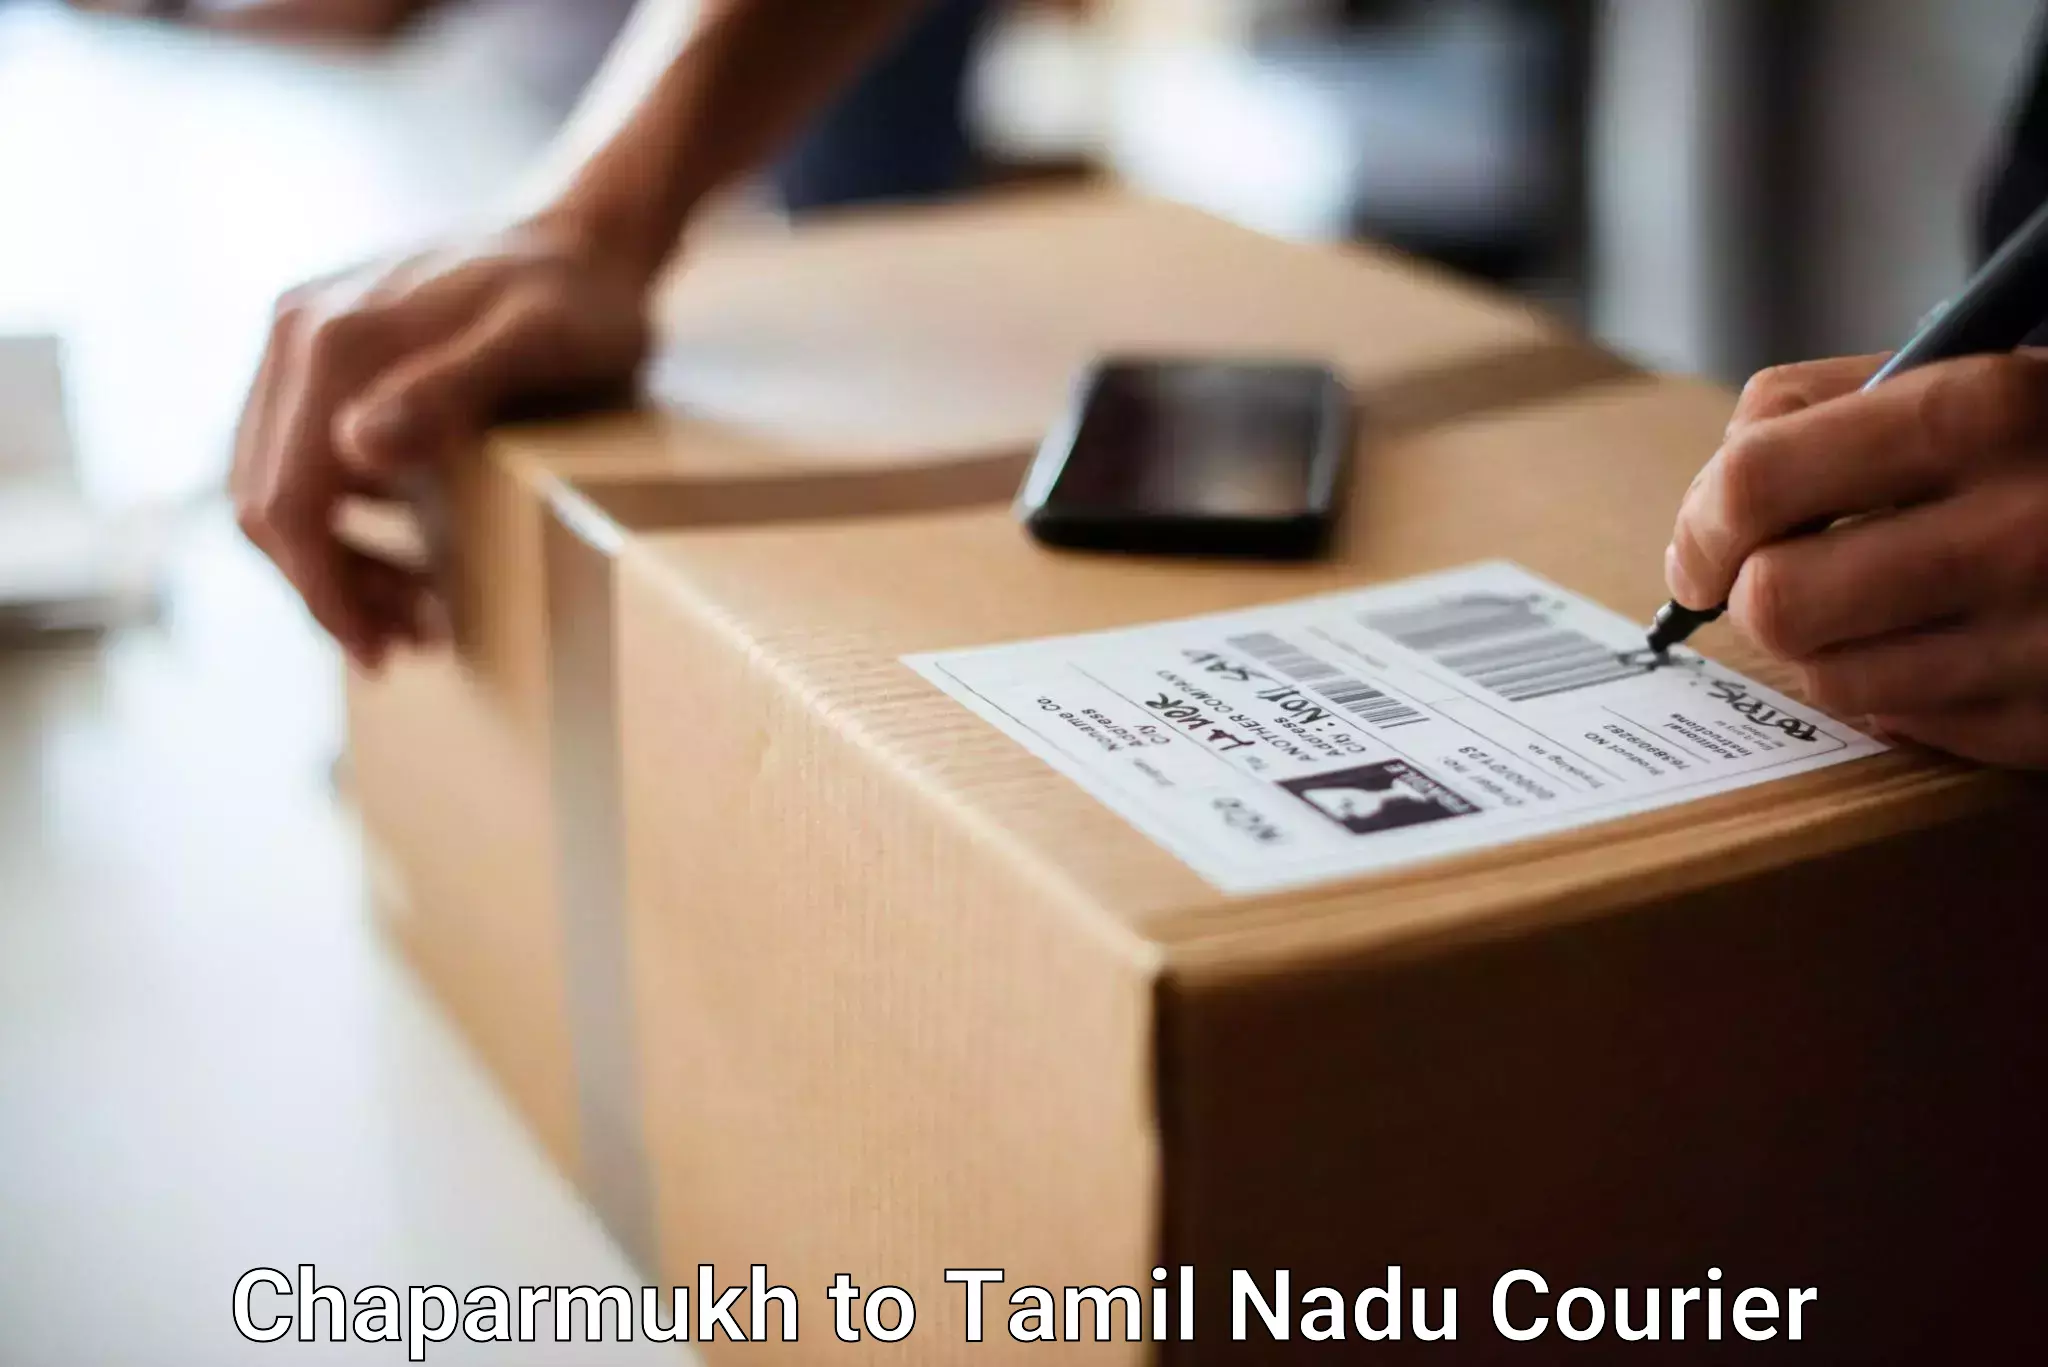 Baggage shipping calculator Chaparmukh to Tamil Nadu